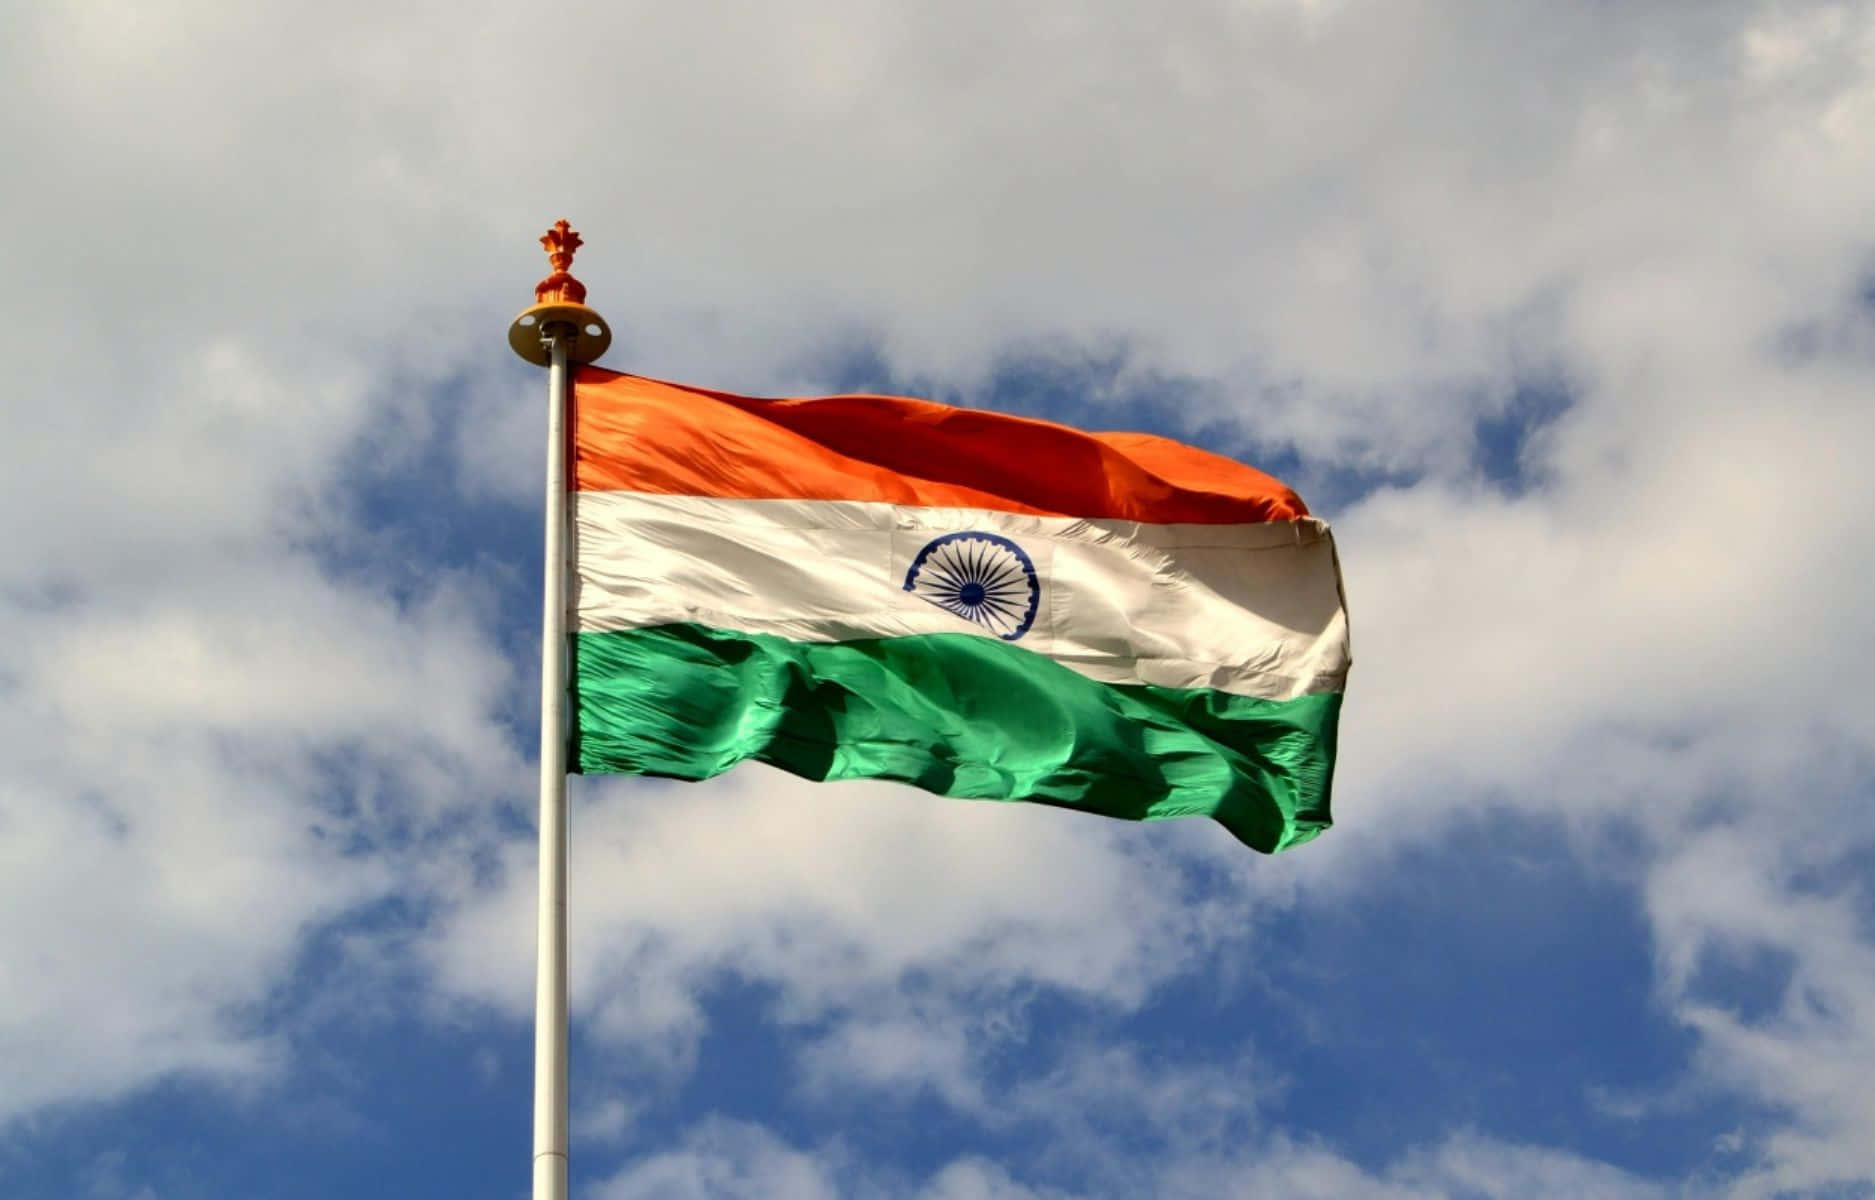 Rindiendohomenaje A La Bandera De La India, Símbolo De Orgullo Nacional.